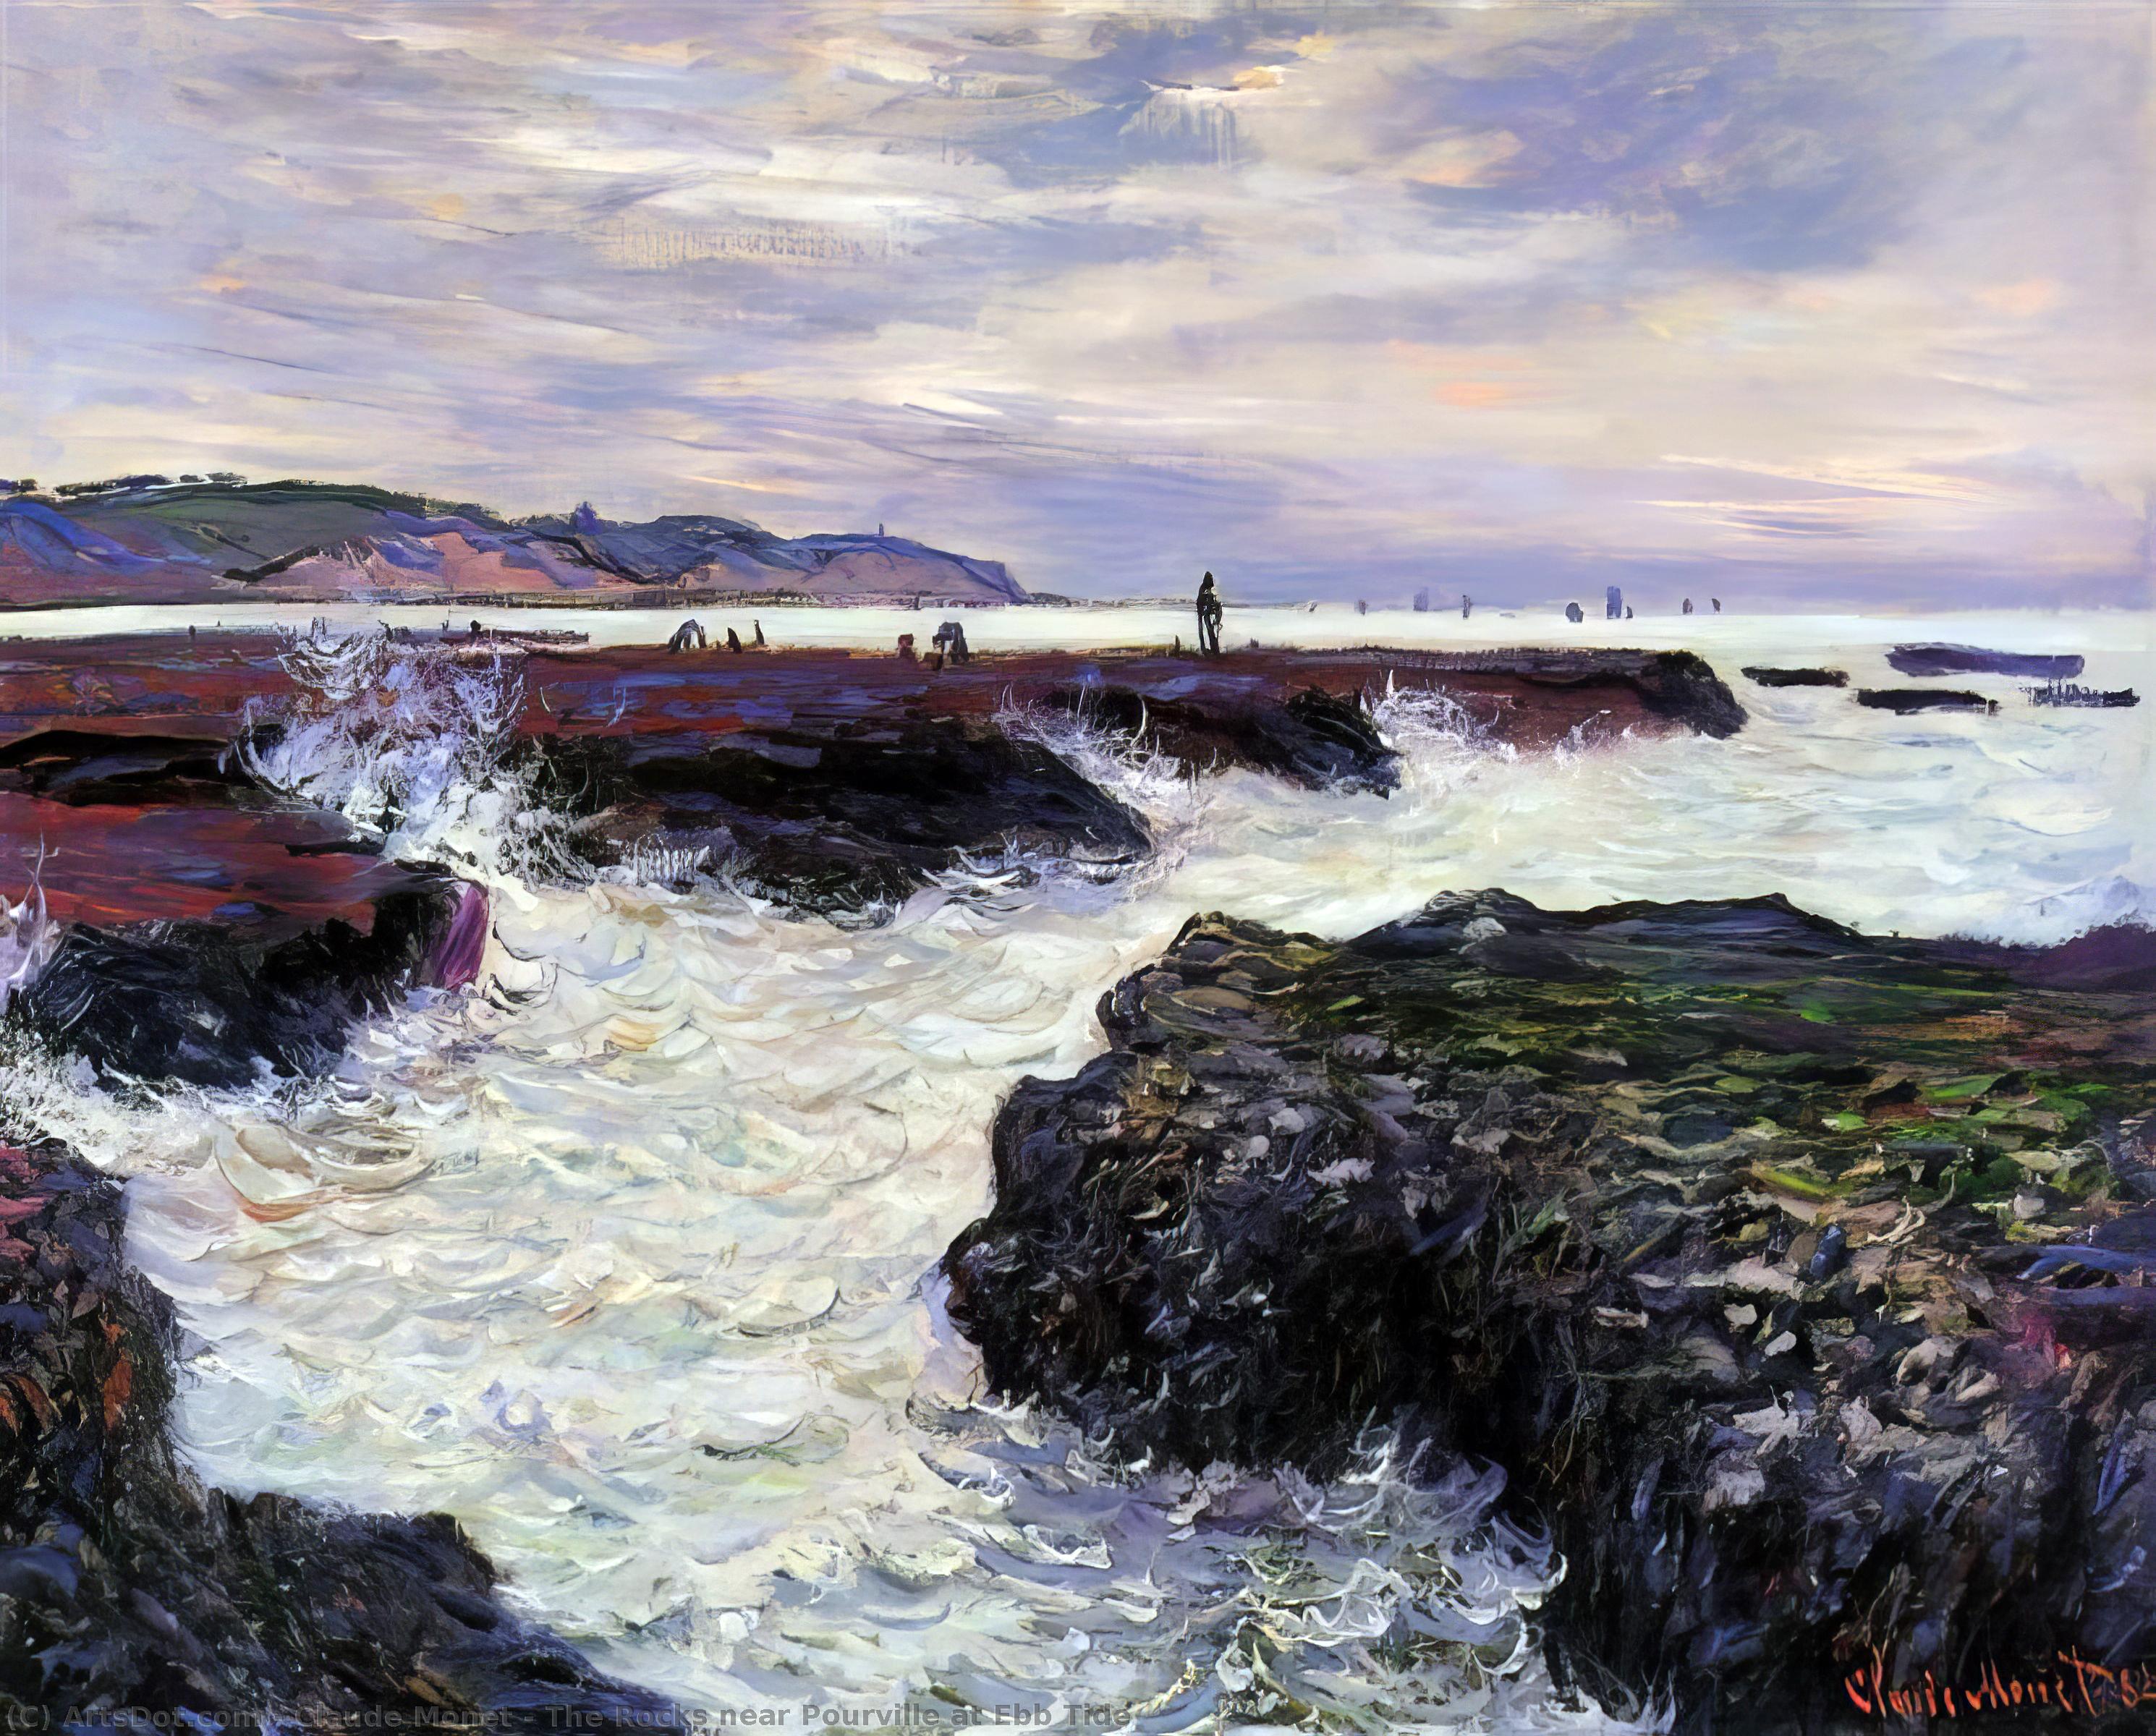 WikiOO.org - Энциклопедия изобразительного искусства - Живопись, Картины  Claude Monet - скалы возле пурвилля на отливе